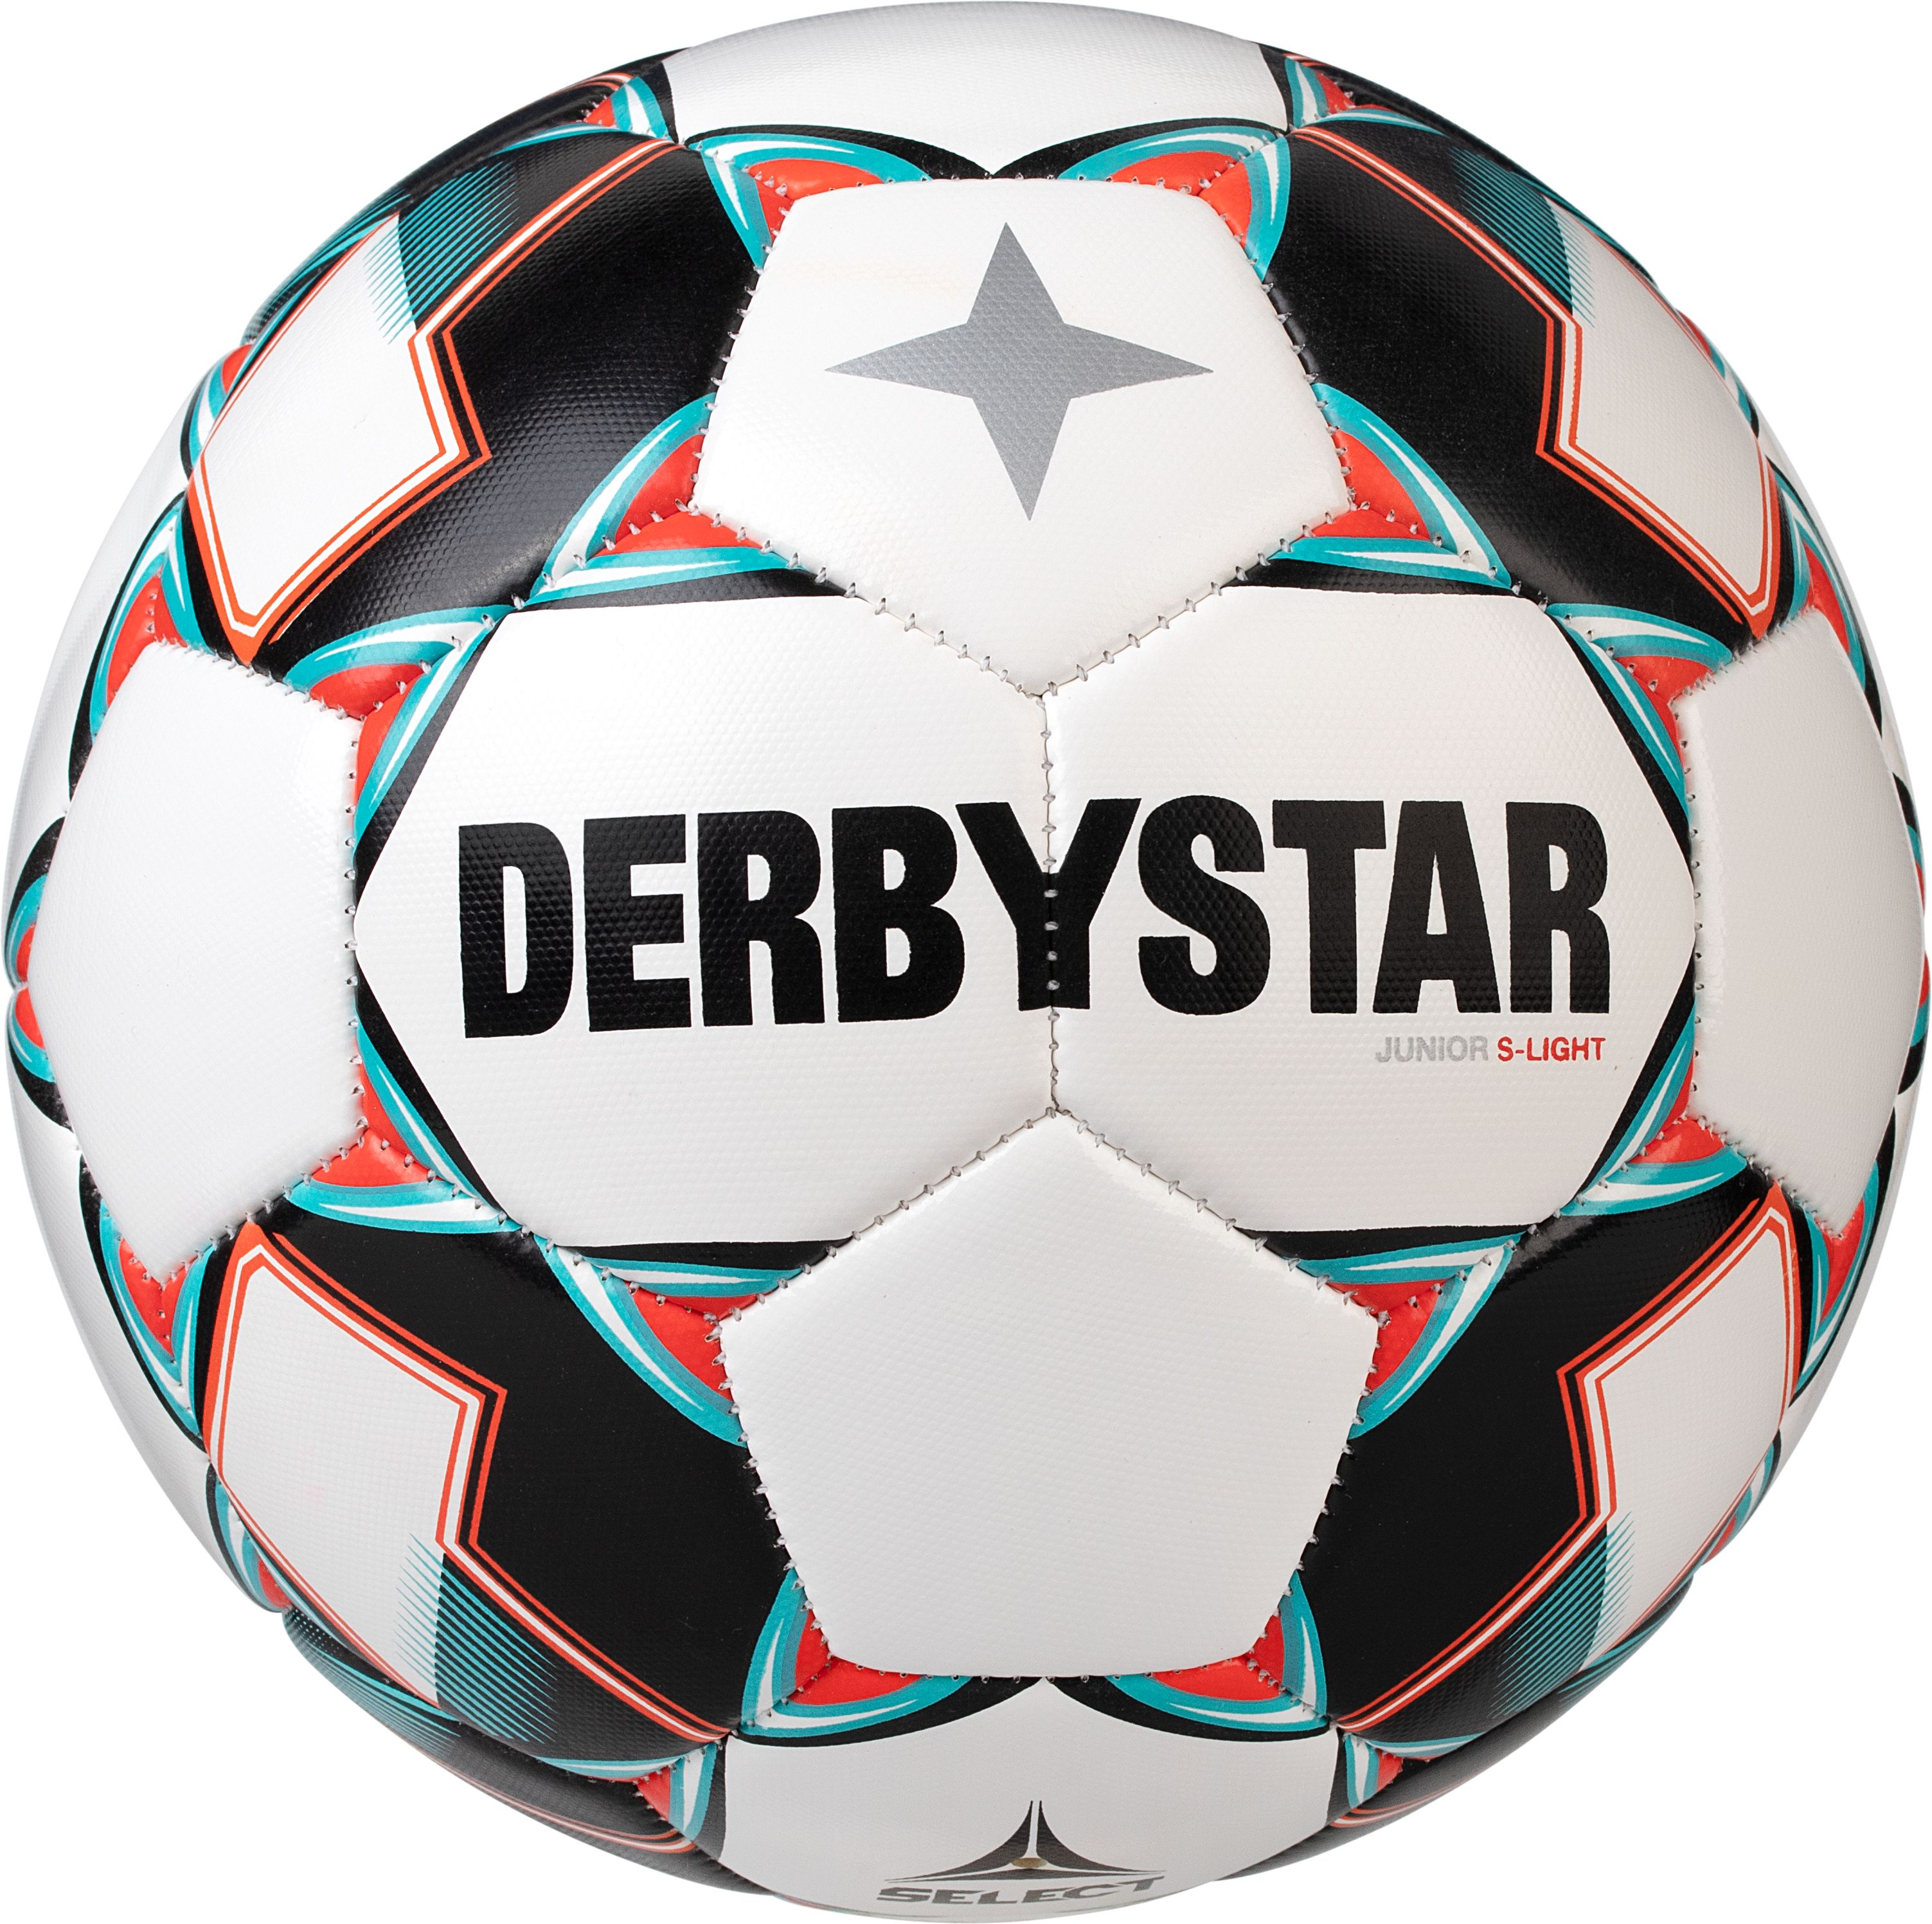 Derbystar Junior S-Light 290g 2020/21 mit Ballsack